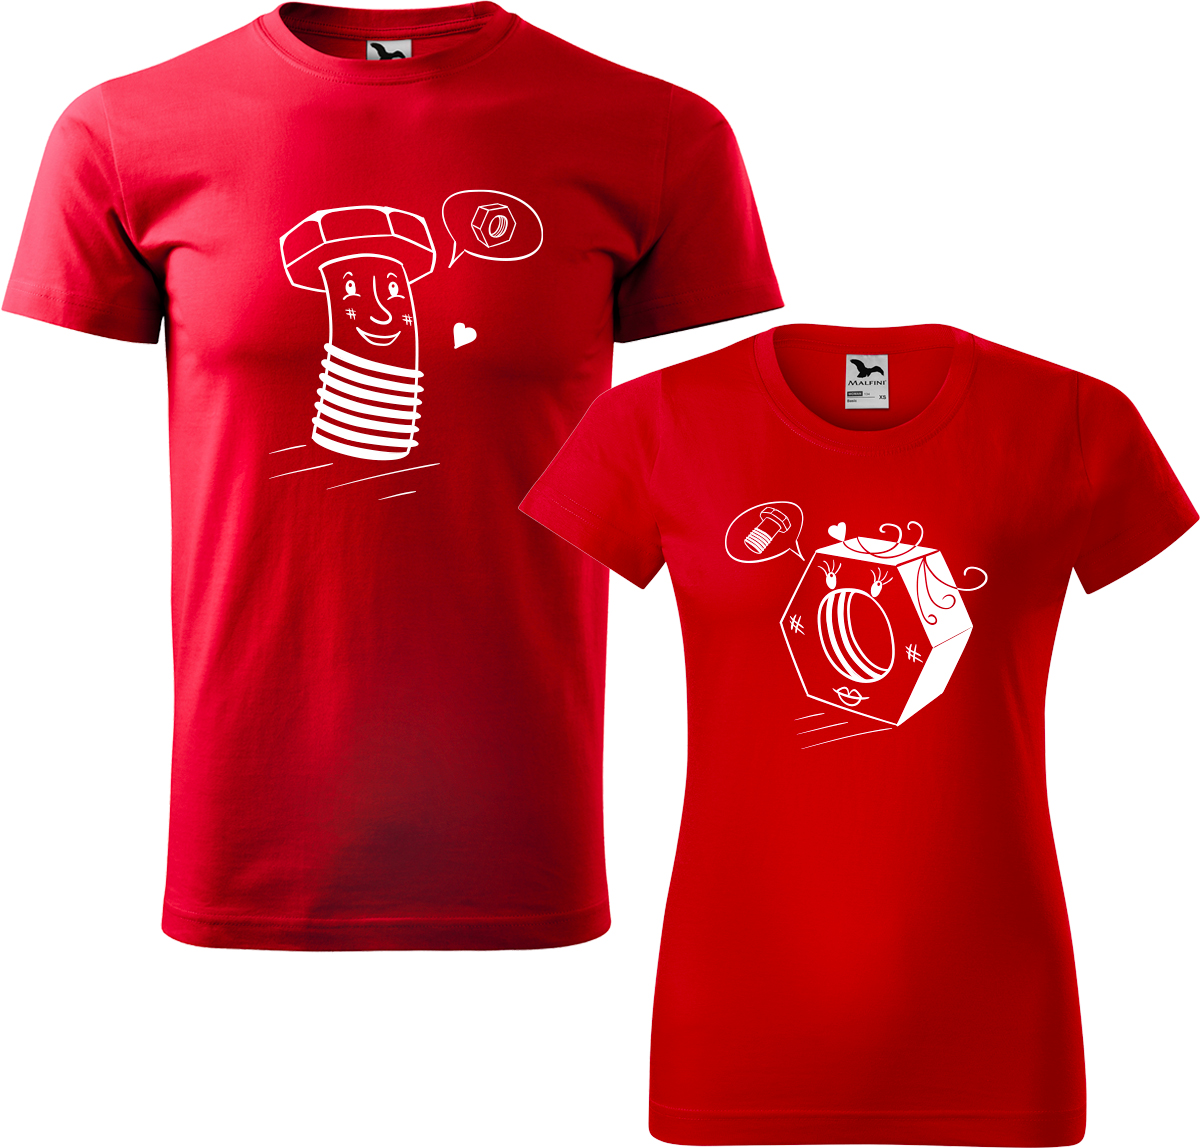 Trička pro páry - Šroubek a matička Barva: Červená (07), Velikost dámské tričko: M, Velikost pánské tričko: 3XL